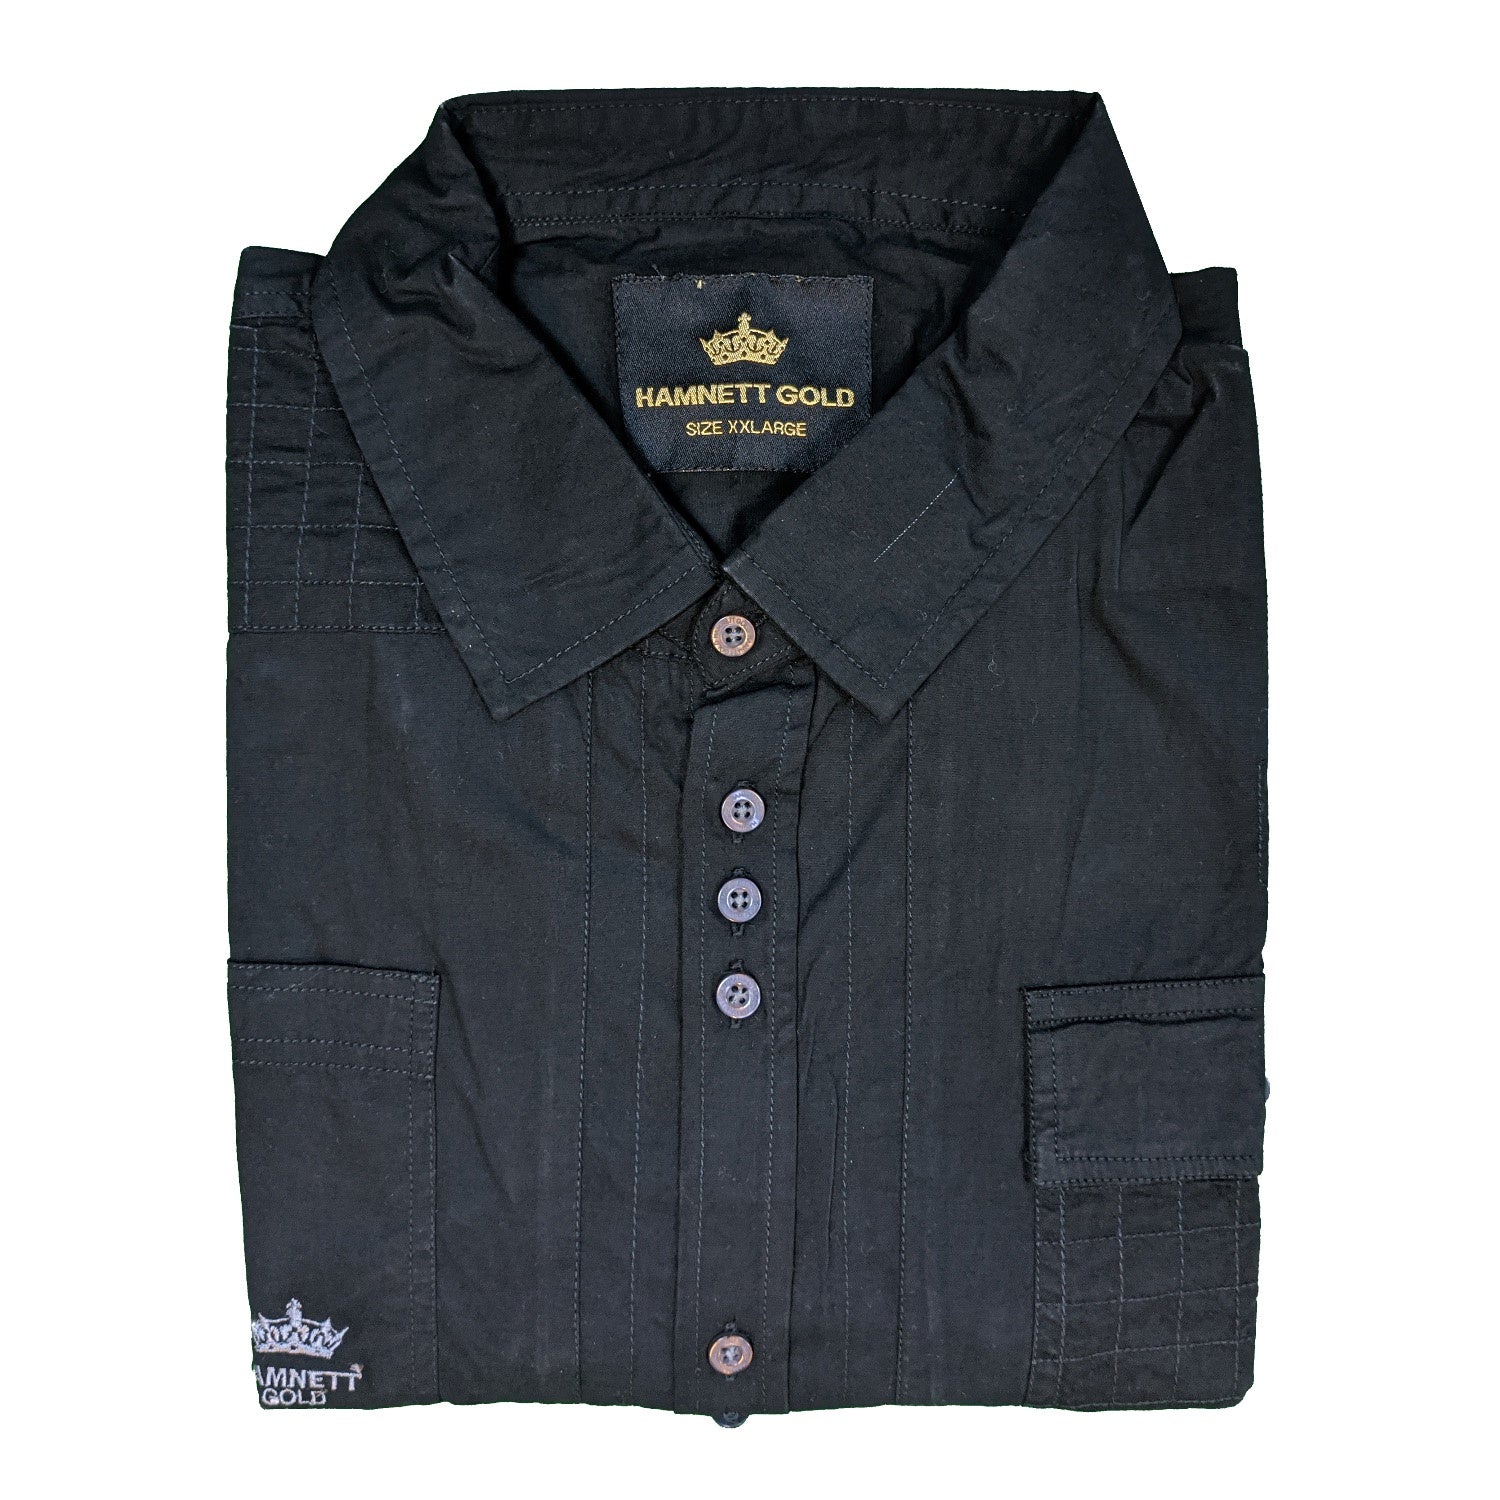 Hamnett S/S Shirt - RR462 - Black 1